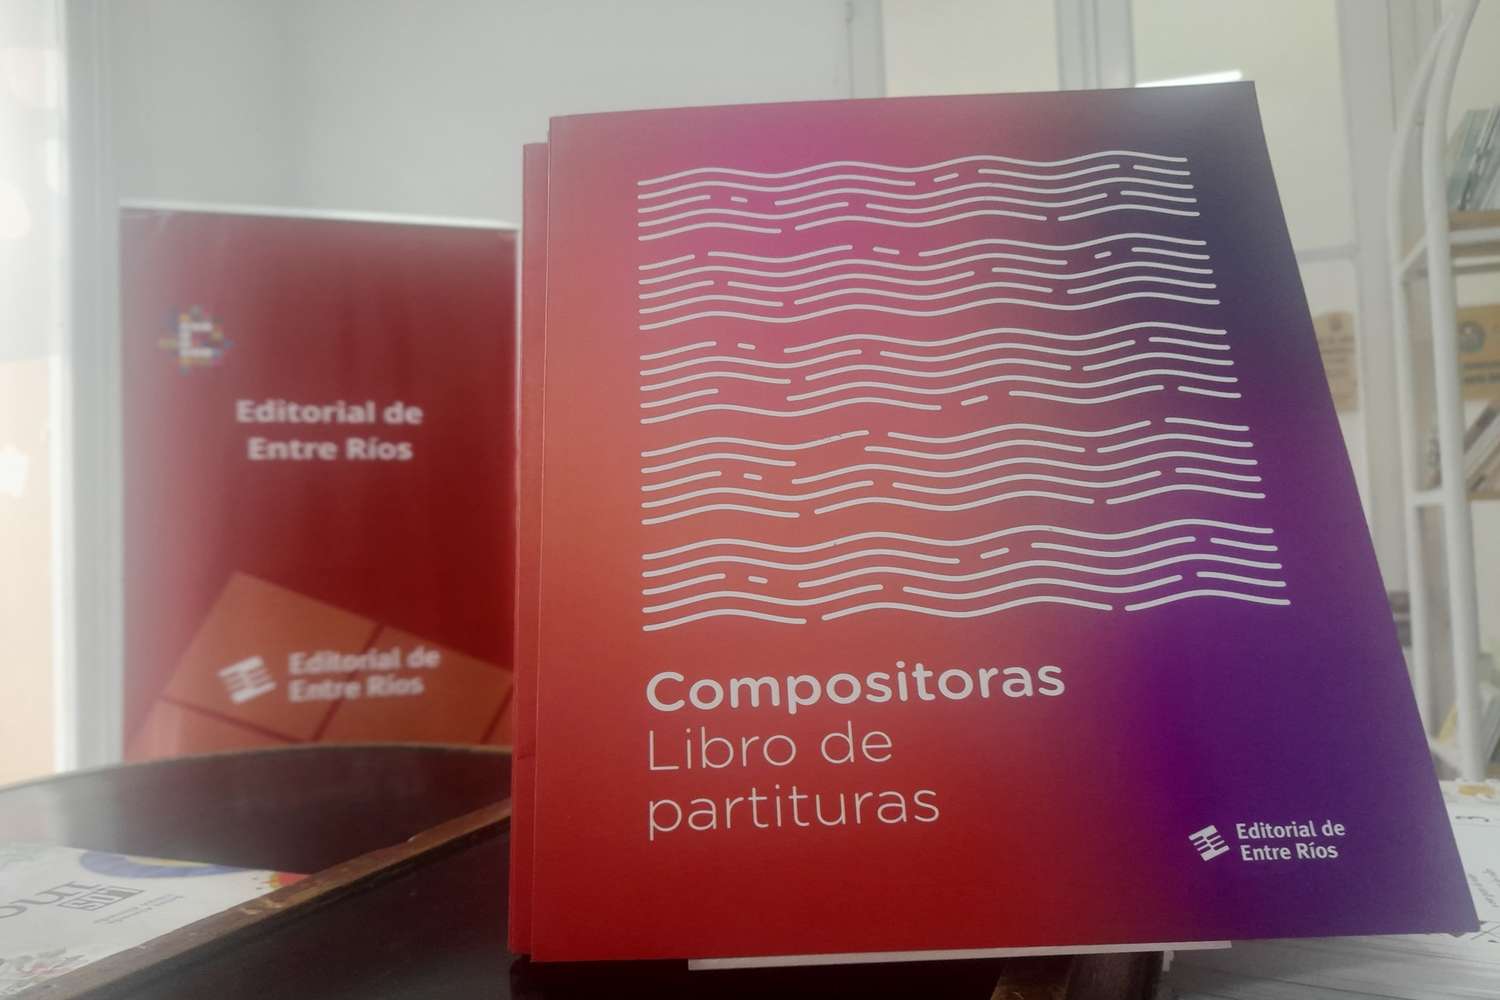 Editorial de Entre Ríos: Presentan el libro “Compositoras”